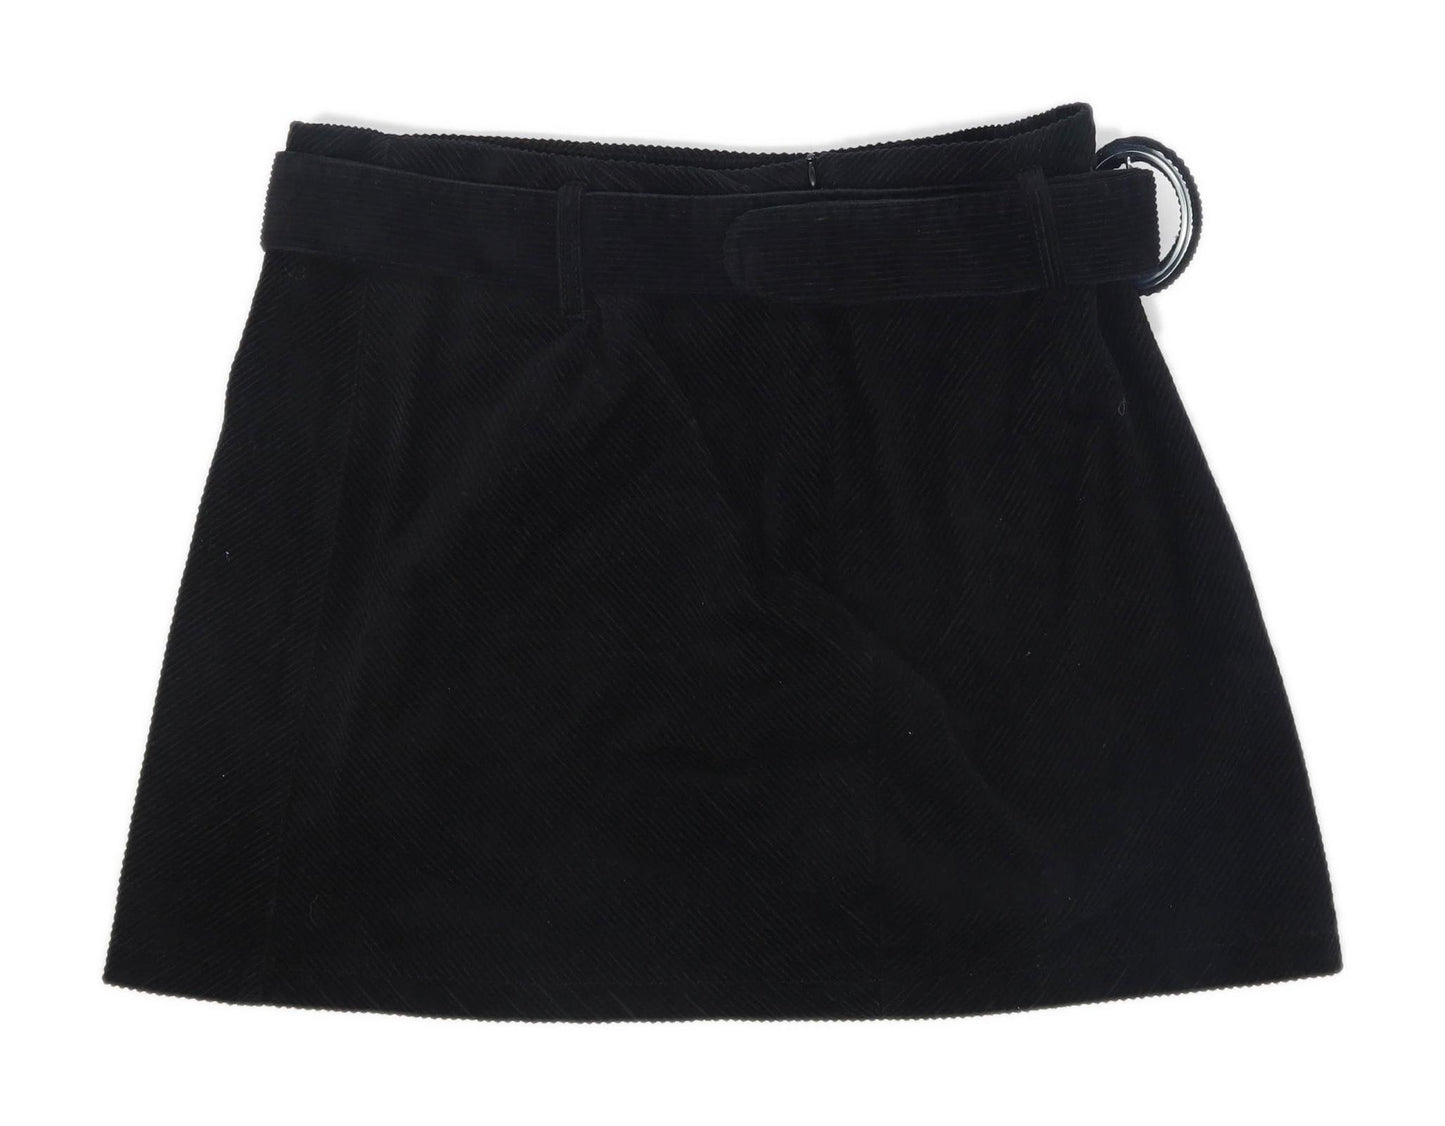 Denim Co Womens Size 14 Corduroy Blend Black Skirt (Regular)